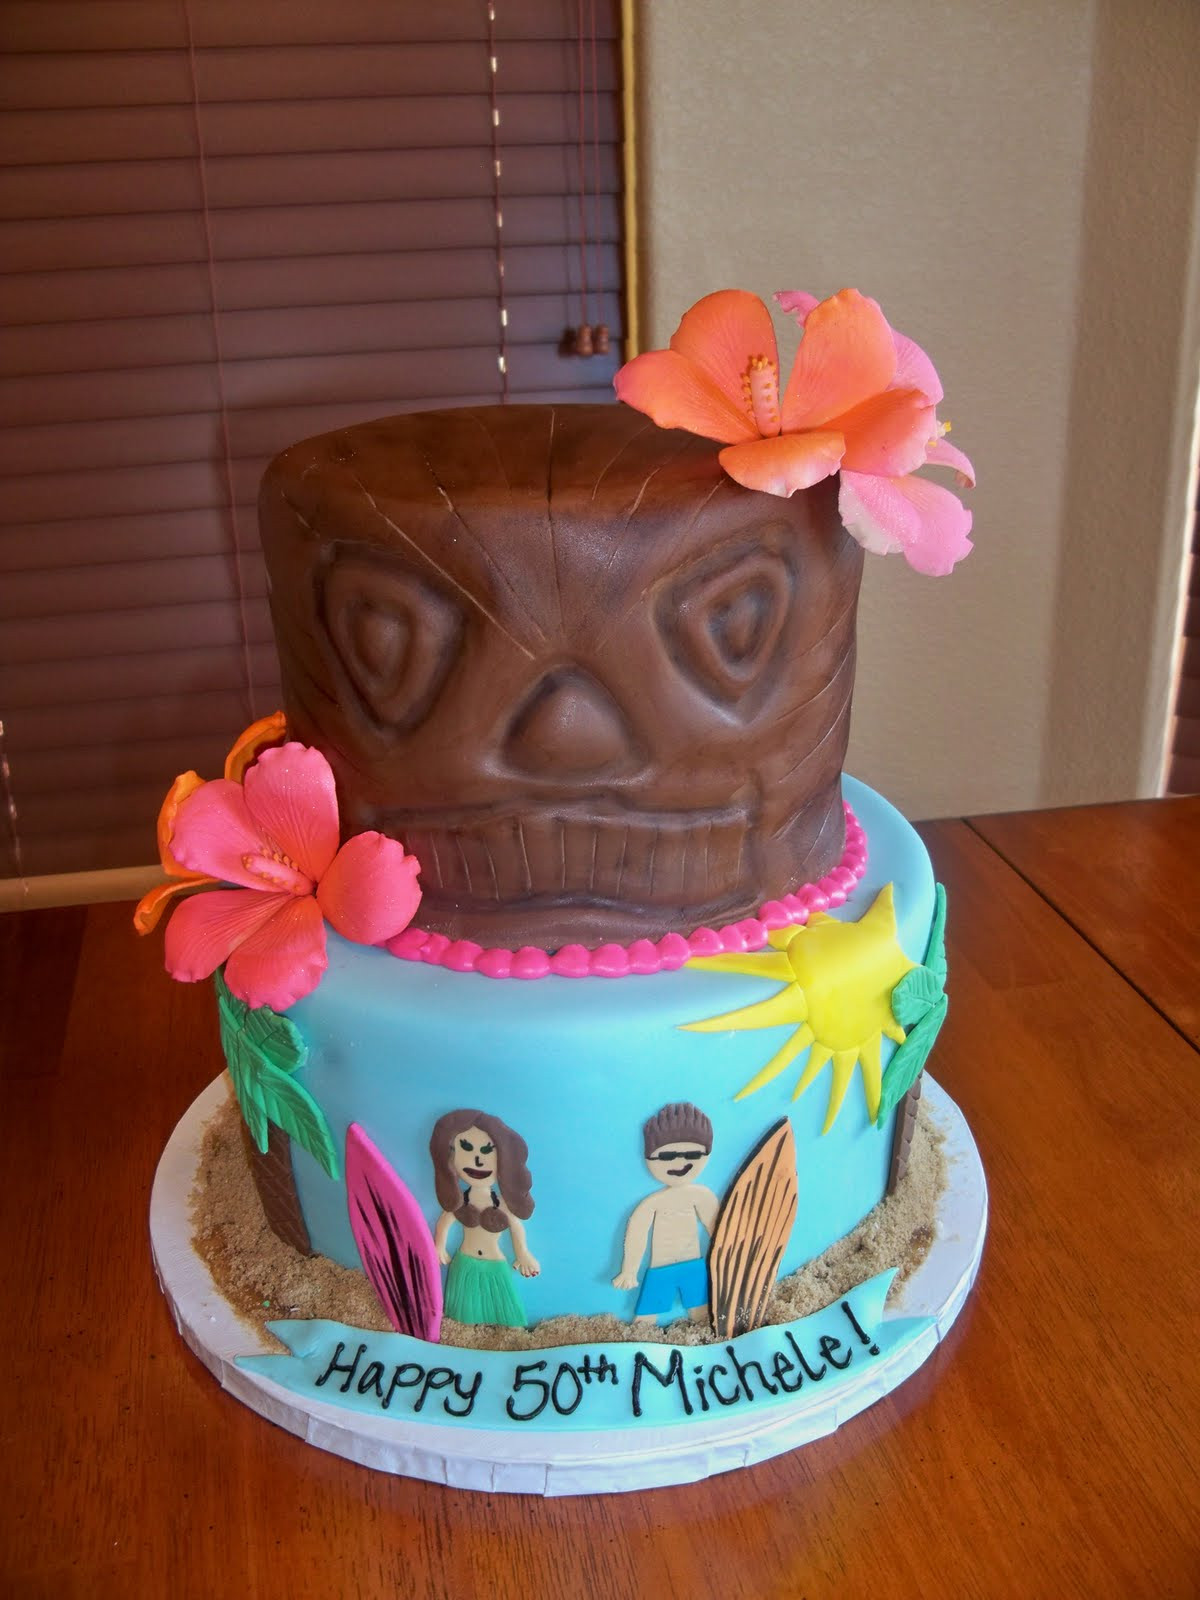 Hawaiian Birthday Cakes
 The Cake Shoppe Hawaiian Themed Birthday Cake